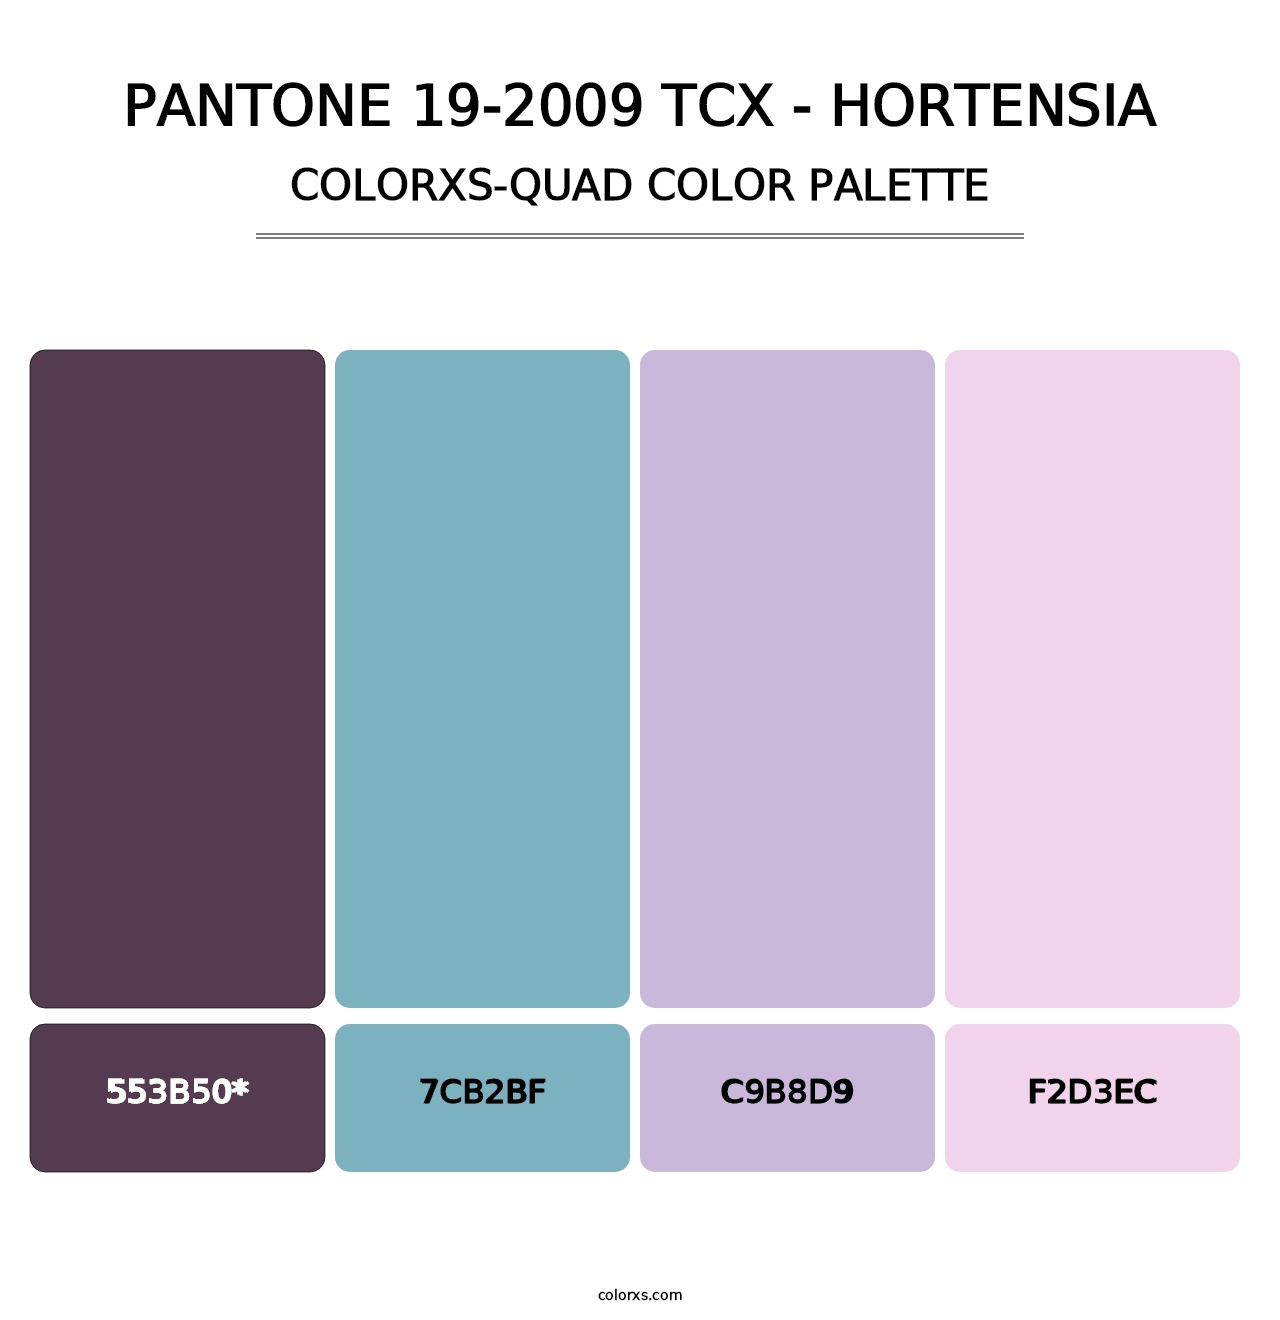 PANTONE 19-2009 TCX - Hortensia - Colorxs Quad Palette